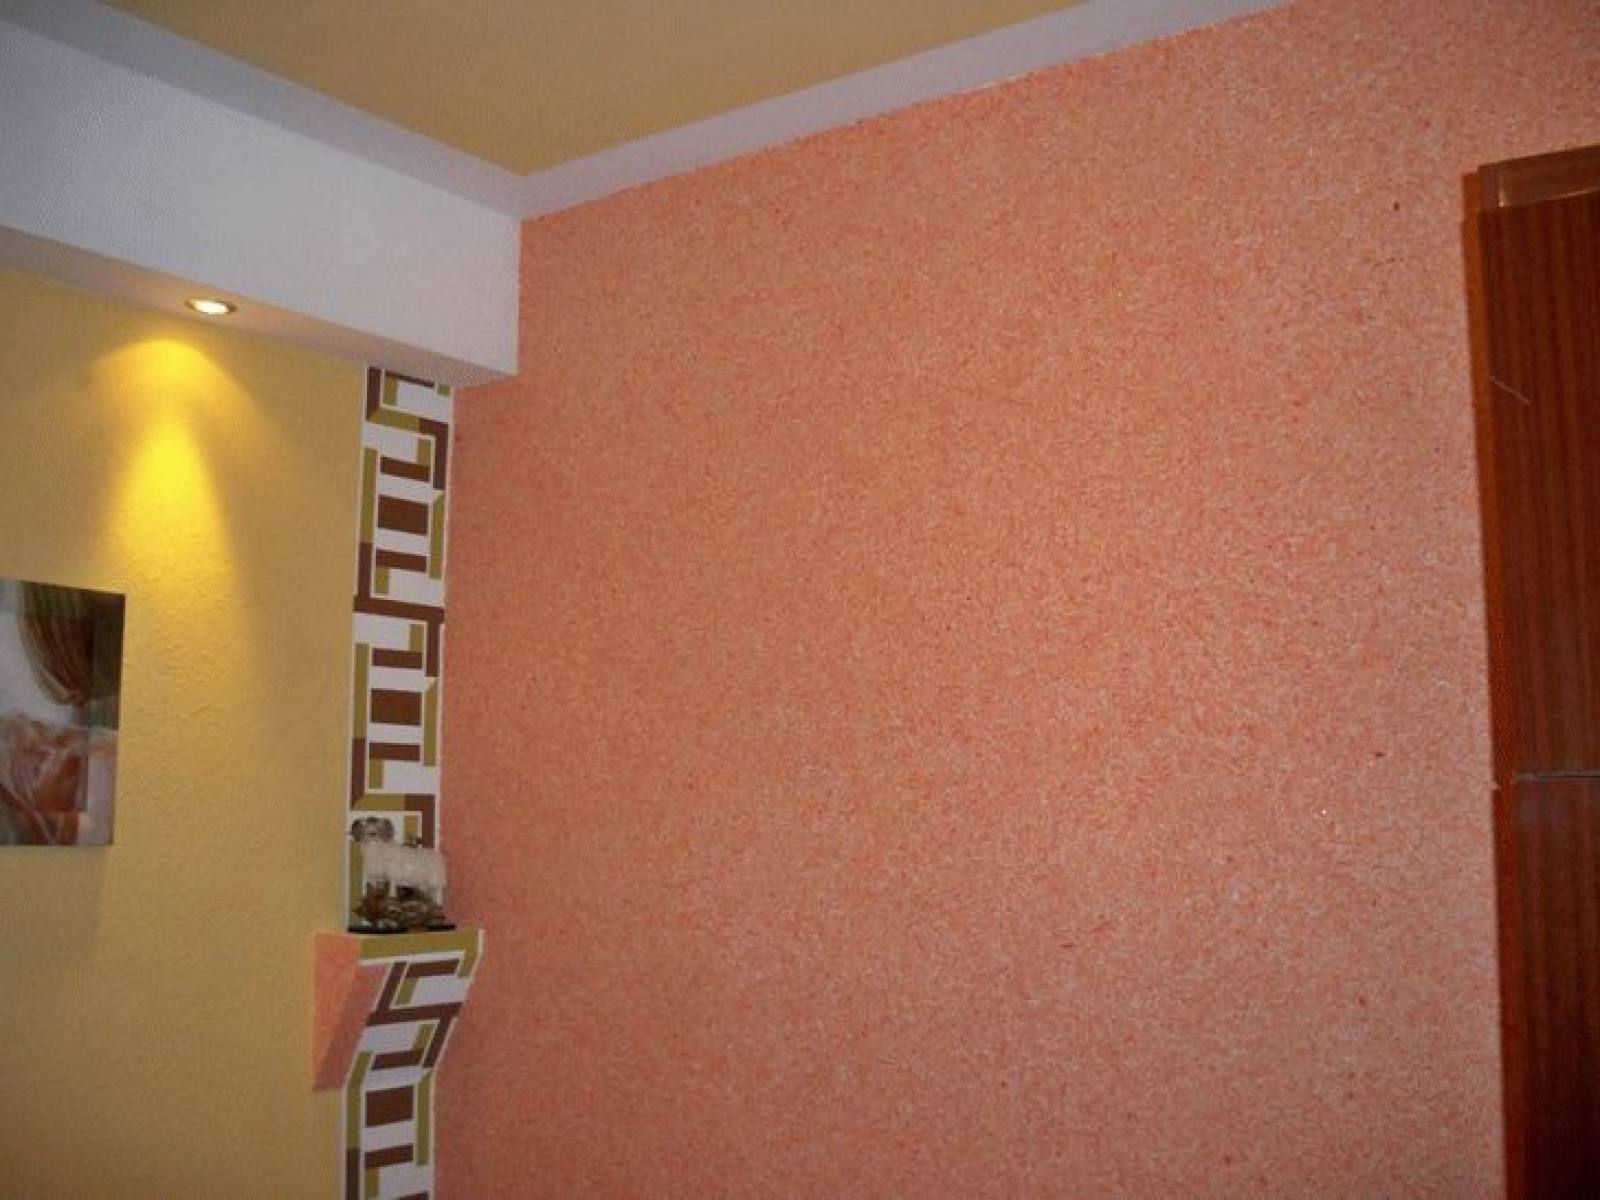 liquid wallpaper in the corridor combined